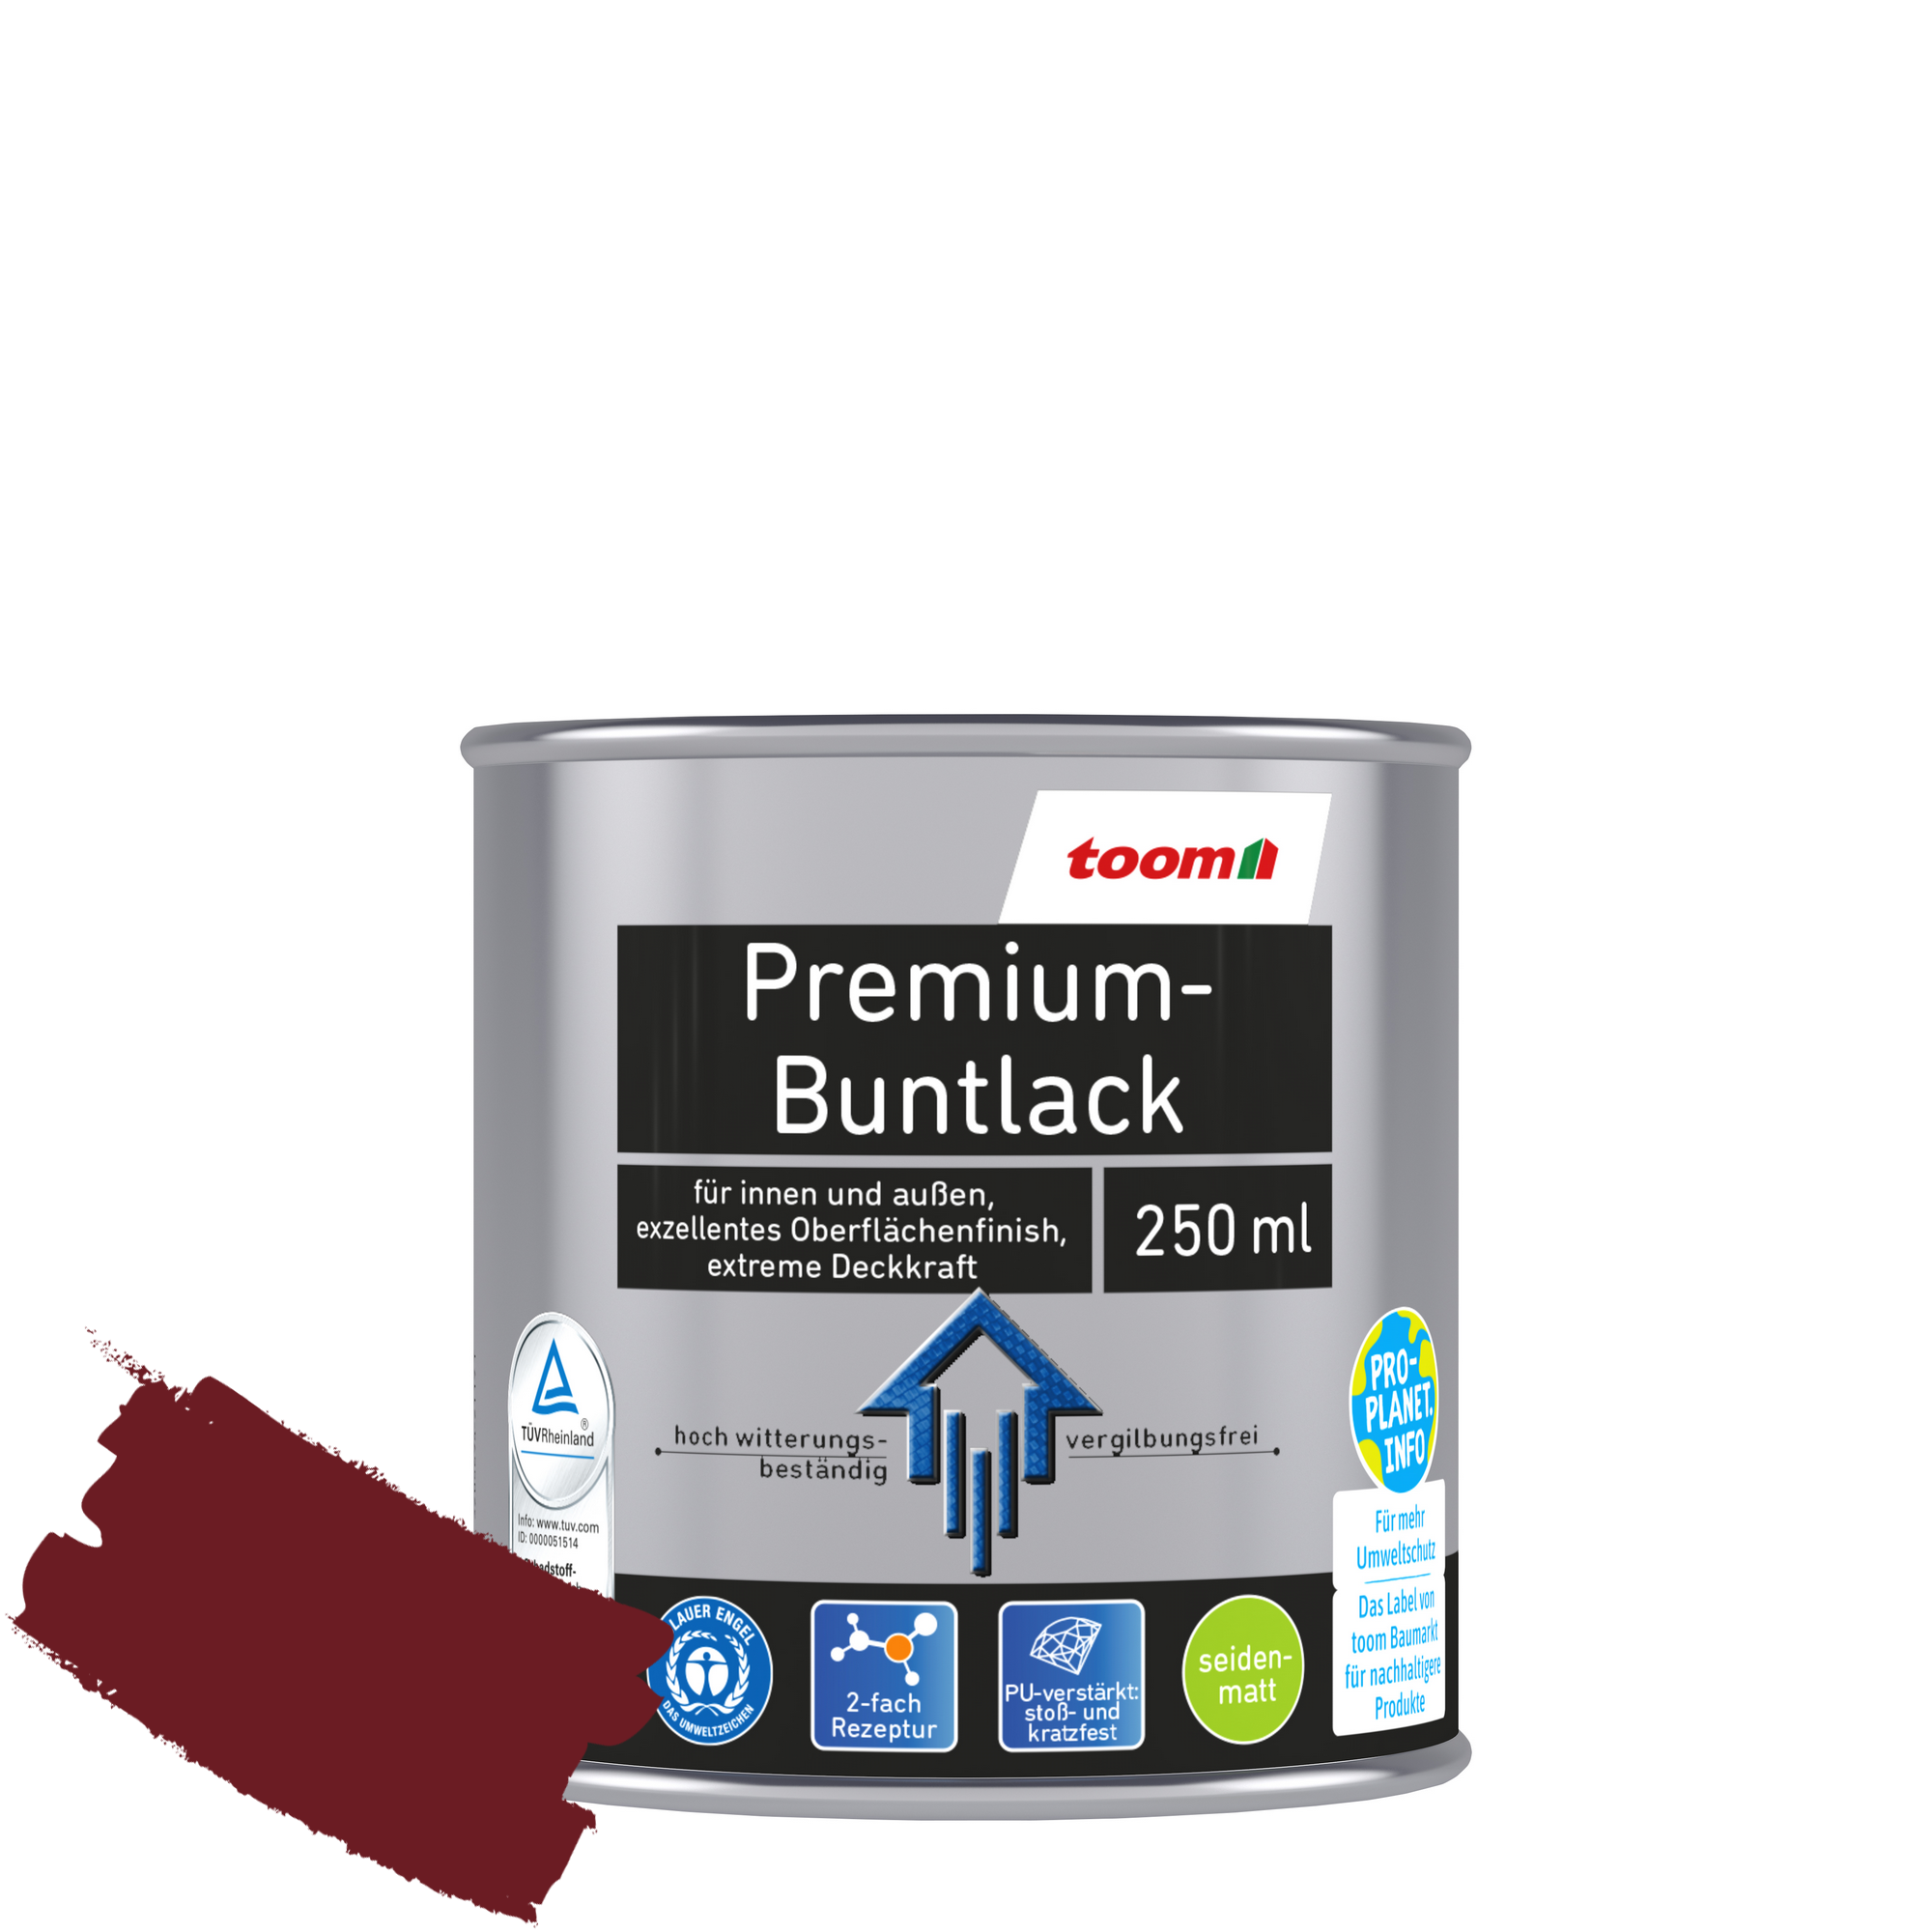 Premium-Buntlack purpurrot seidenmatt 250 ml + product picture